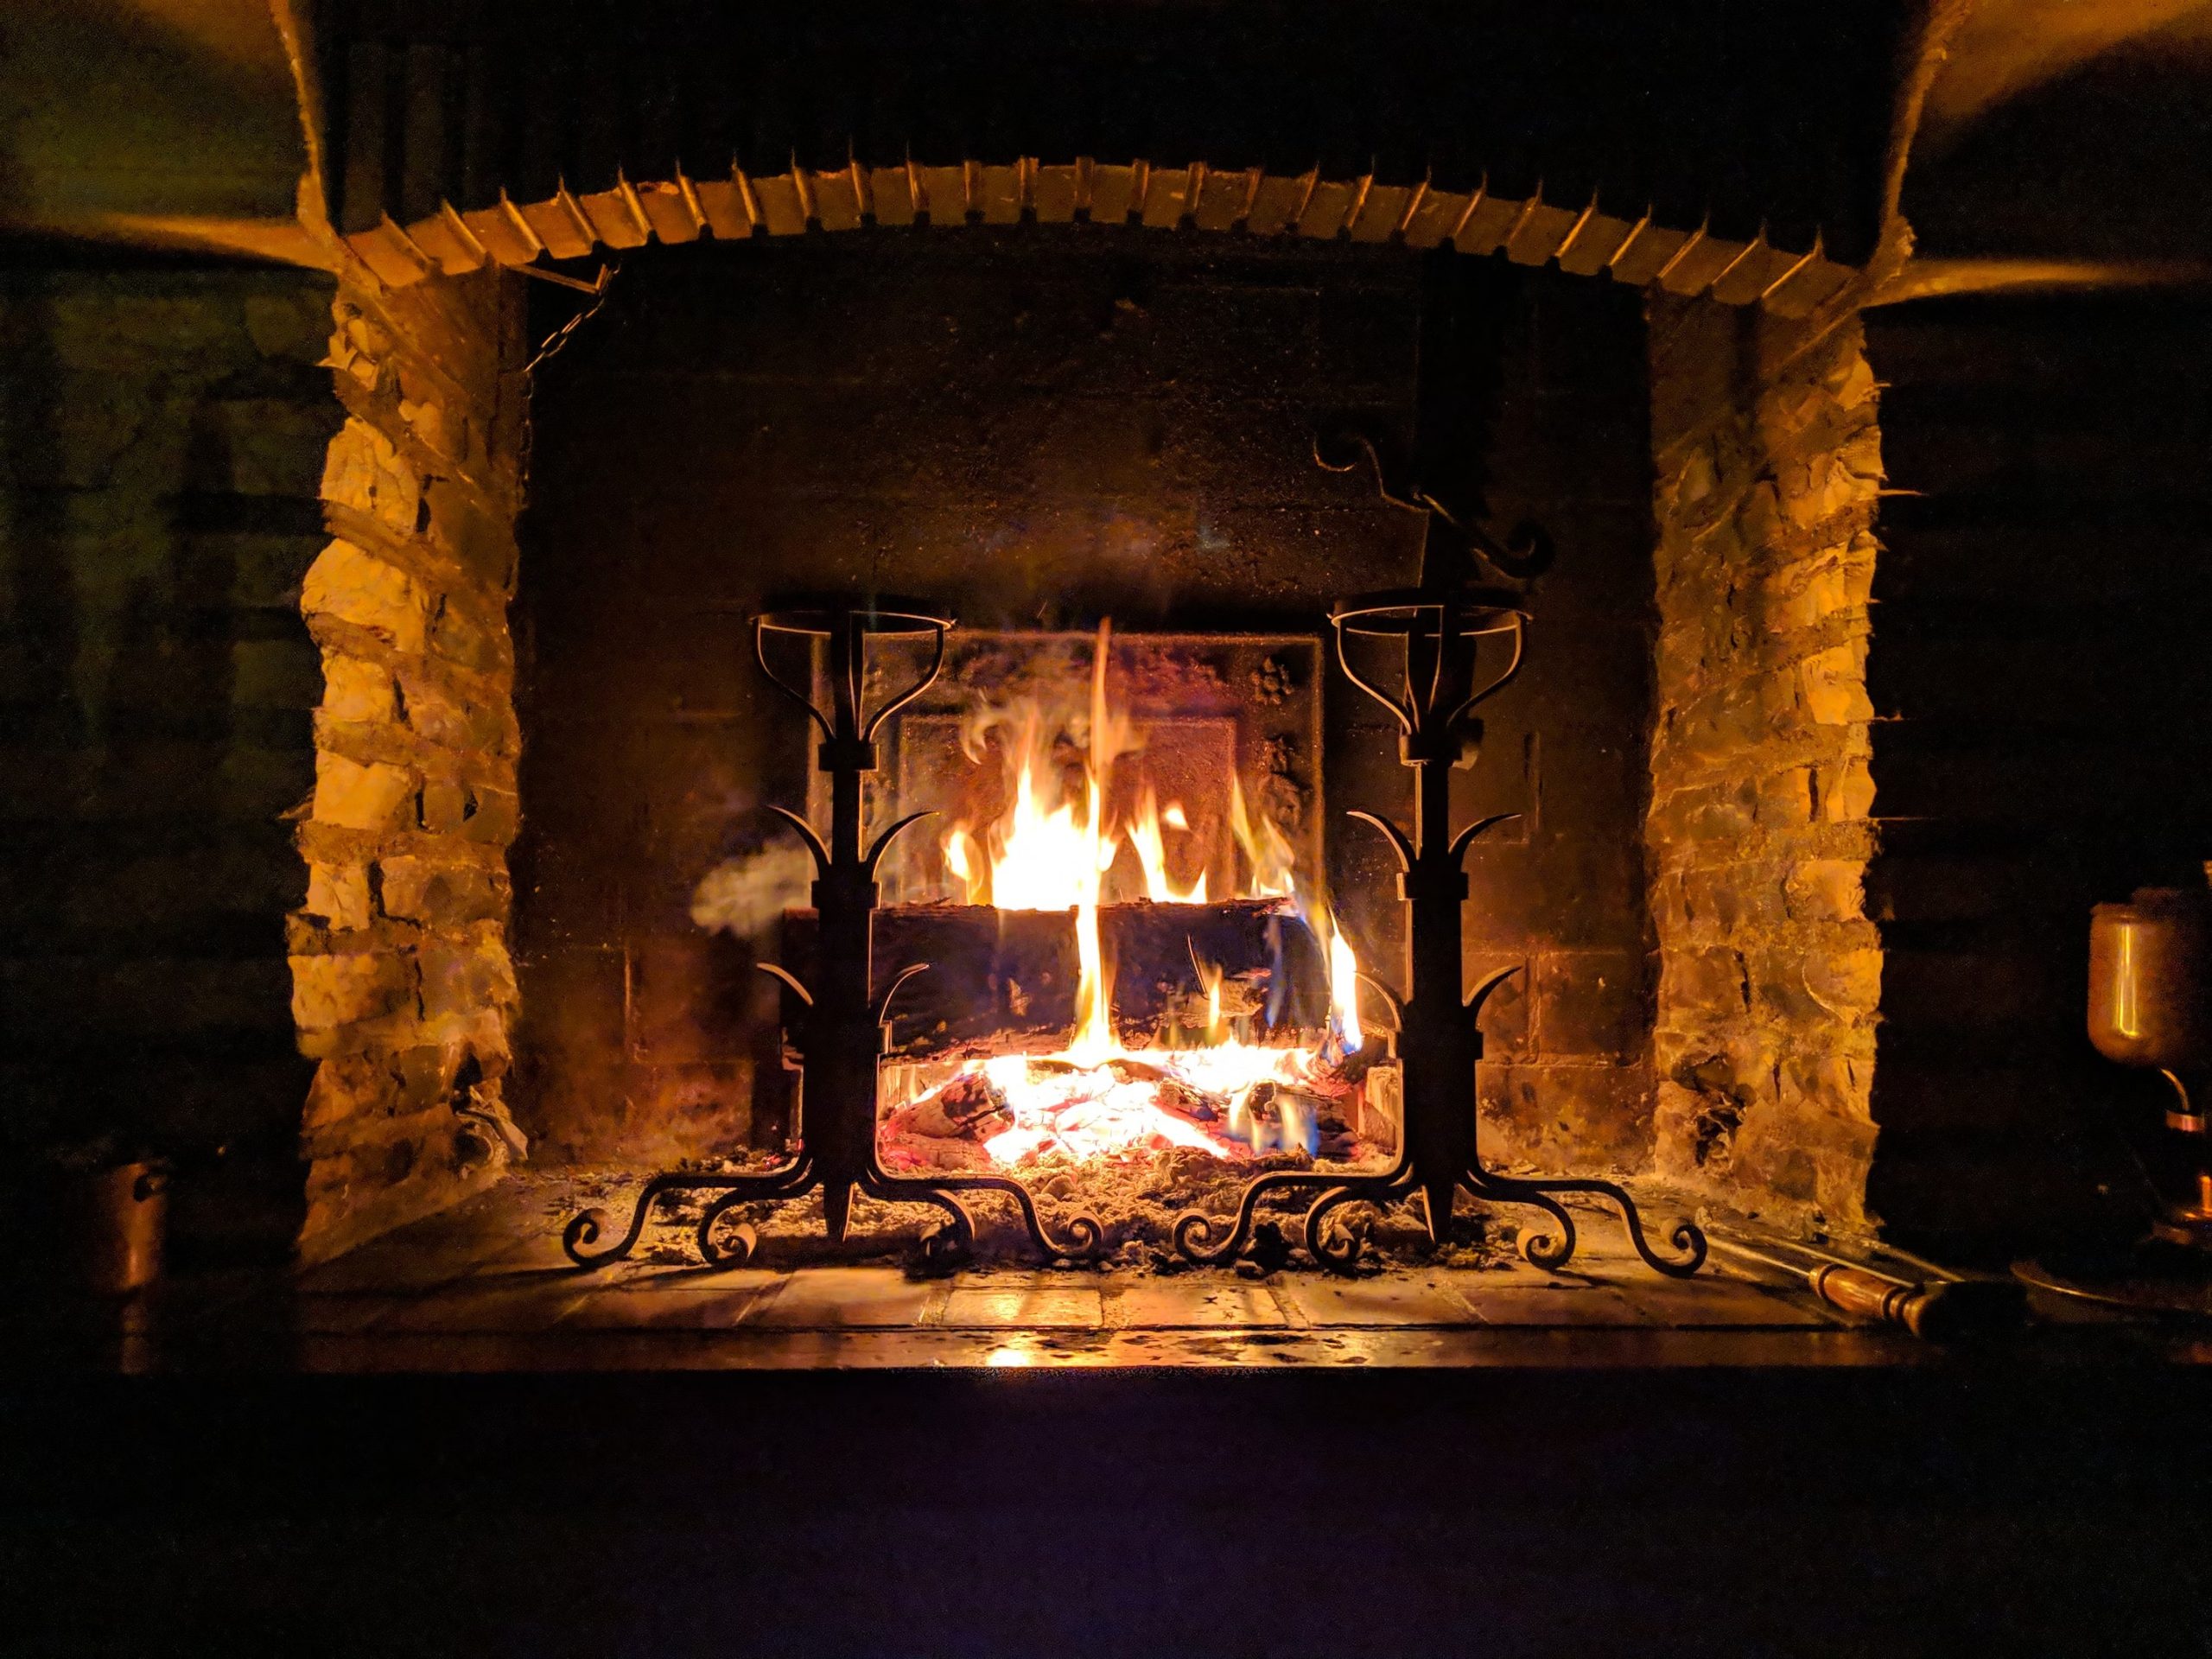 A lit fireplace